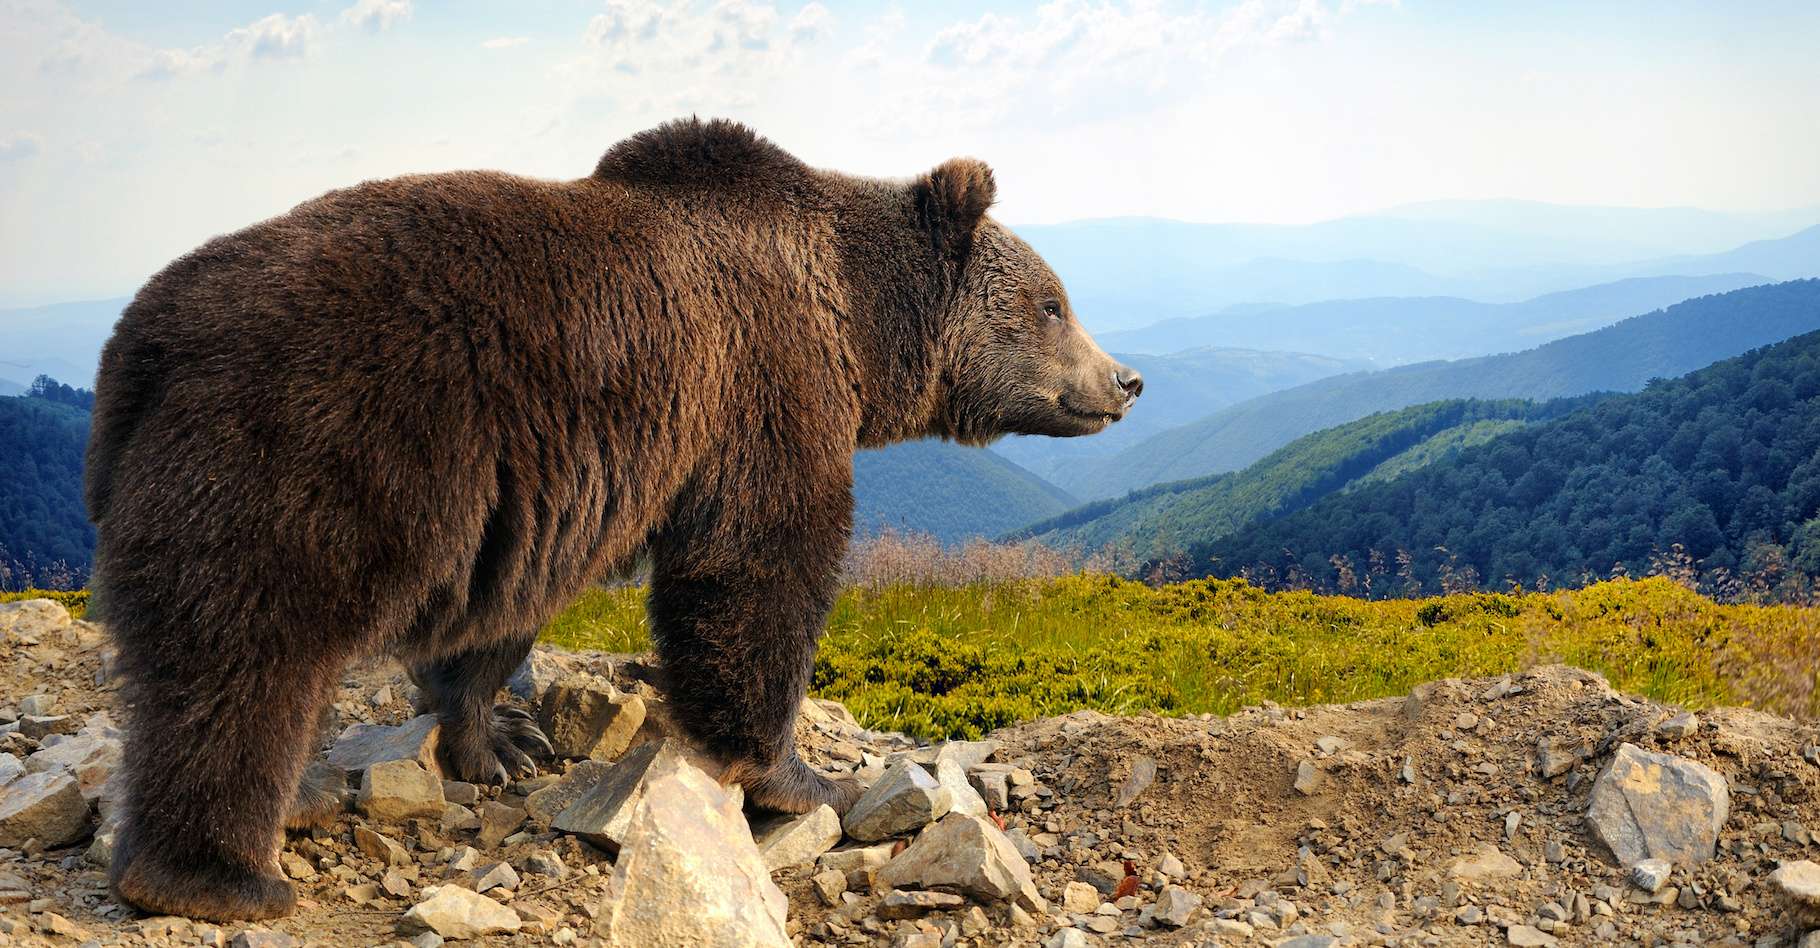 Dans le Parc national et réserve de Katmai, en Alaska, un ours brun a été vu sans avoir perdu de poids après la période d’hibernation. WTF ?! © byrdyak, Adobe Stock